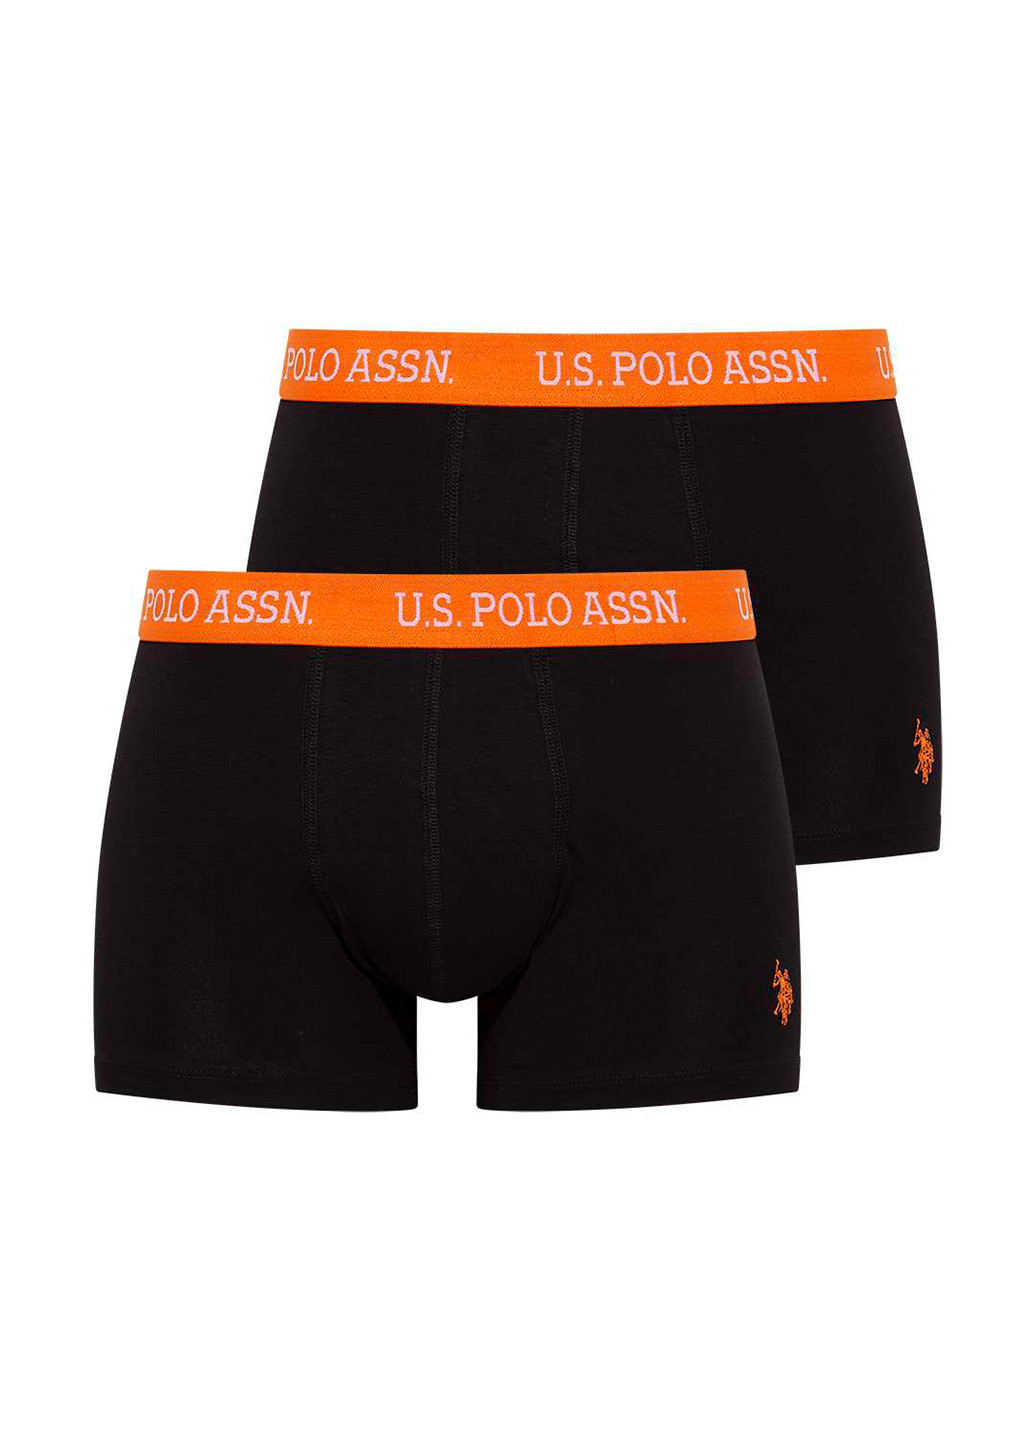 Трусы (2 шт.) U.S. Polo Assn. боксеры логотипы чёрные повседневные хлопок